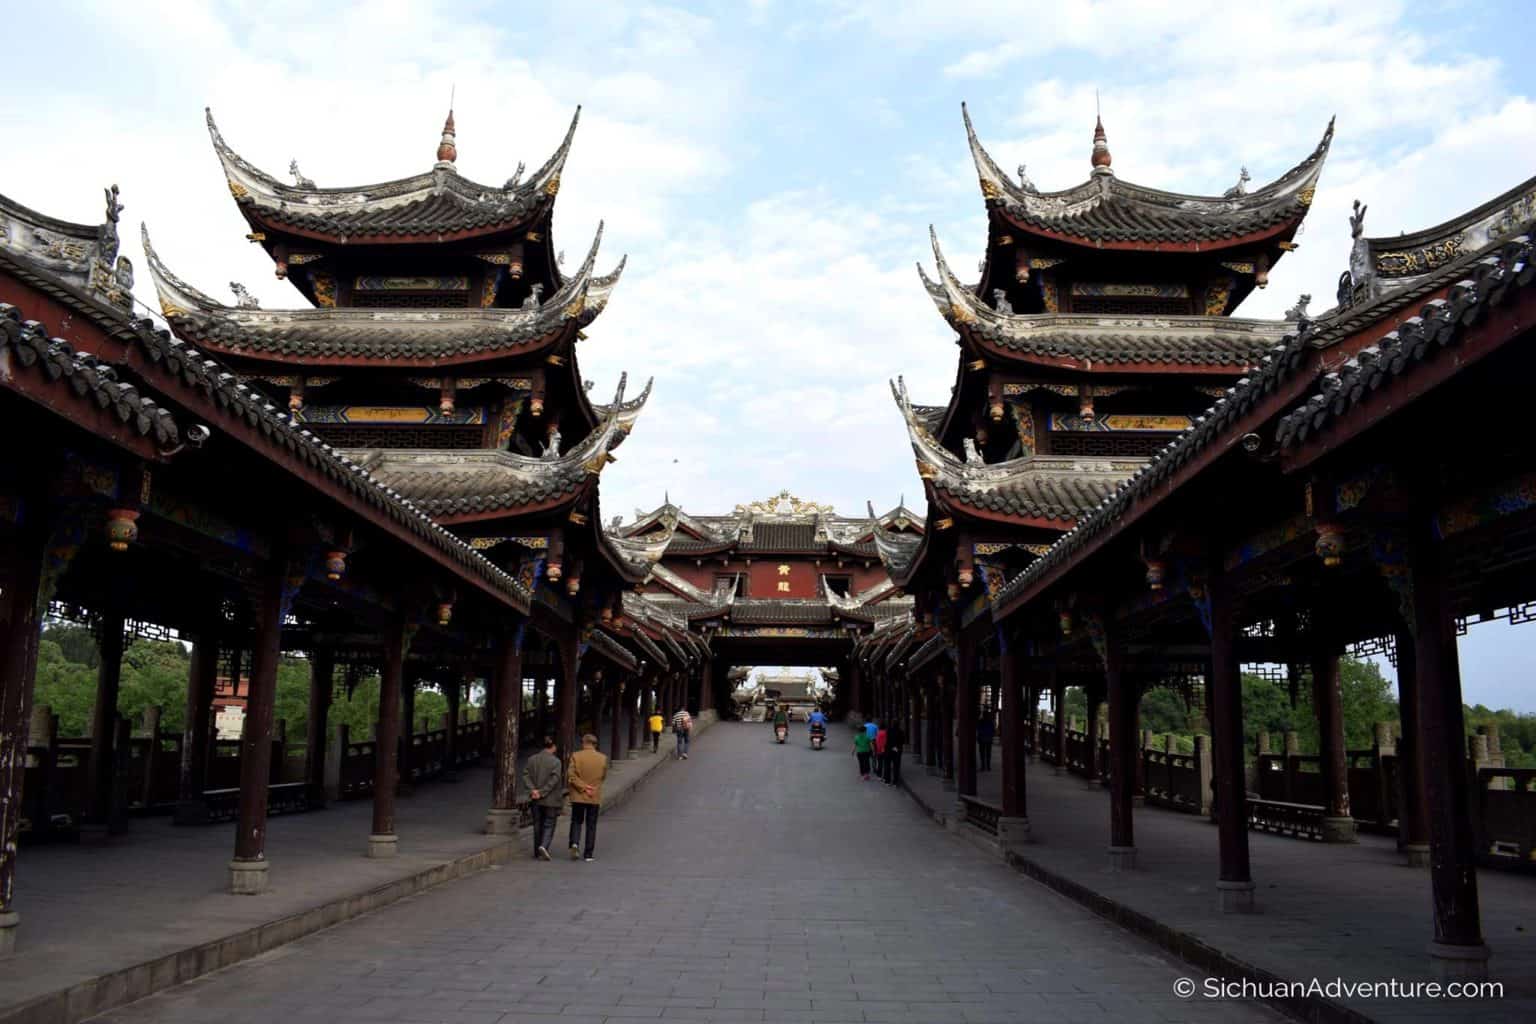 Huanglongxi Ancient Town